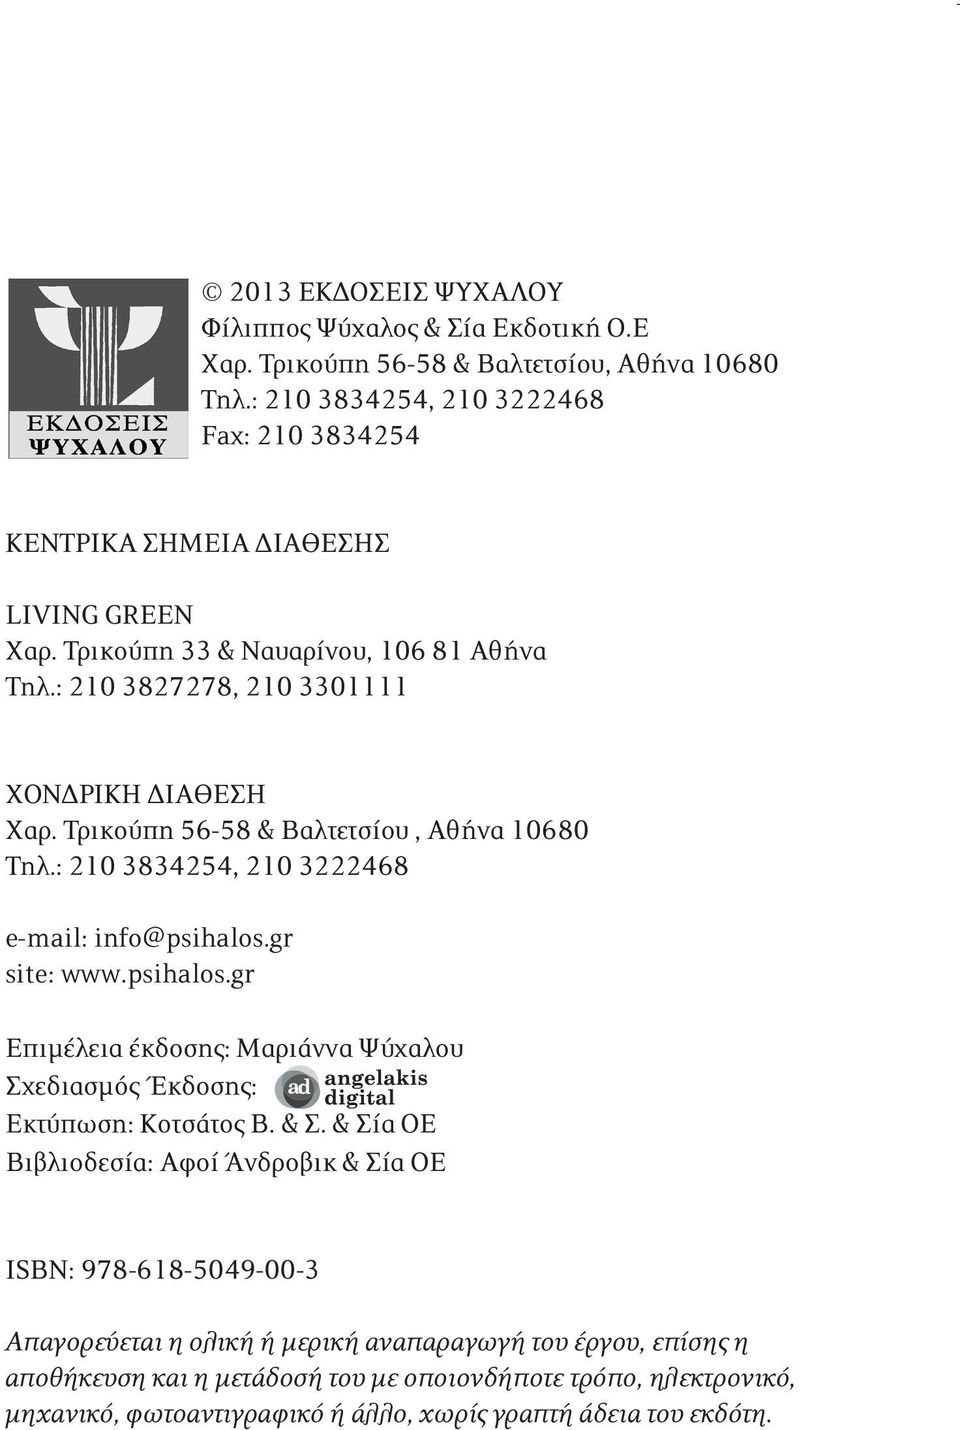 Τρικούπη 56-58 & Βαλτετσίου, Αθήνα 10680 Τηλ.: 210 3834254, 210 3222468 e-mail: info@psihalos.gr site: www.psihalos.gr Eπιμέλεια έκδοσης: Μαριάννα Ψύχαλου Σχεδιασμός Έκδοσης: Εκτύπωση: Κοτσάτος Β.